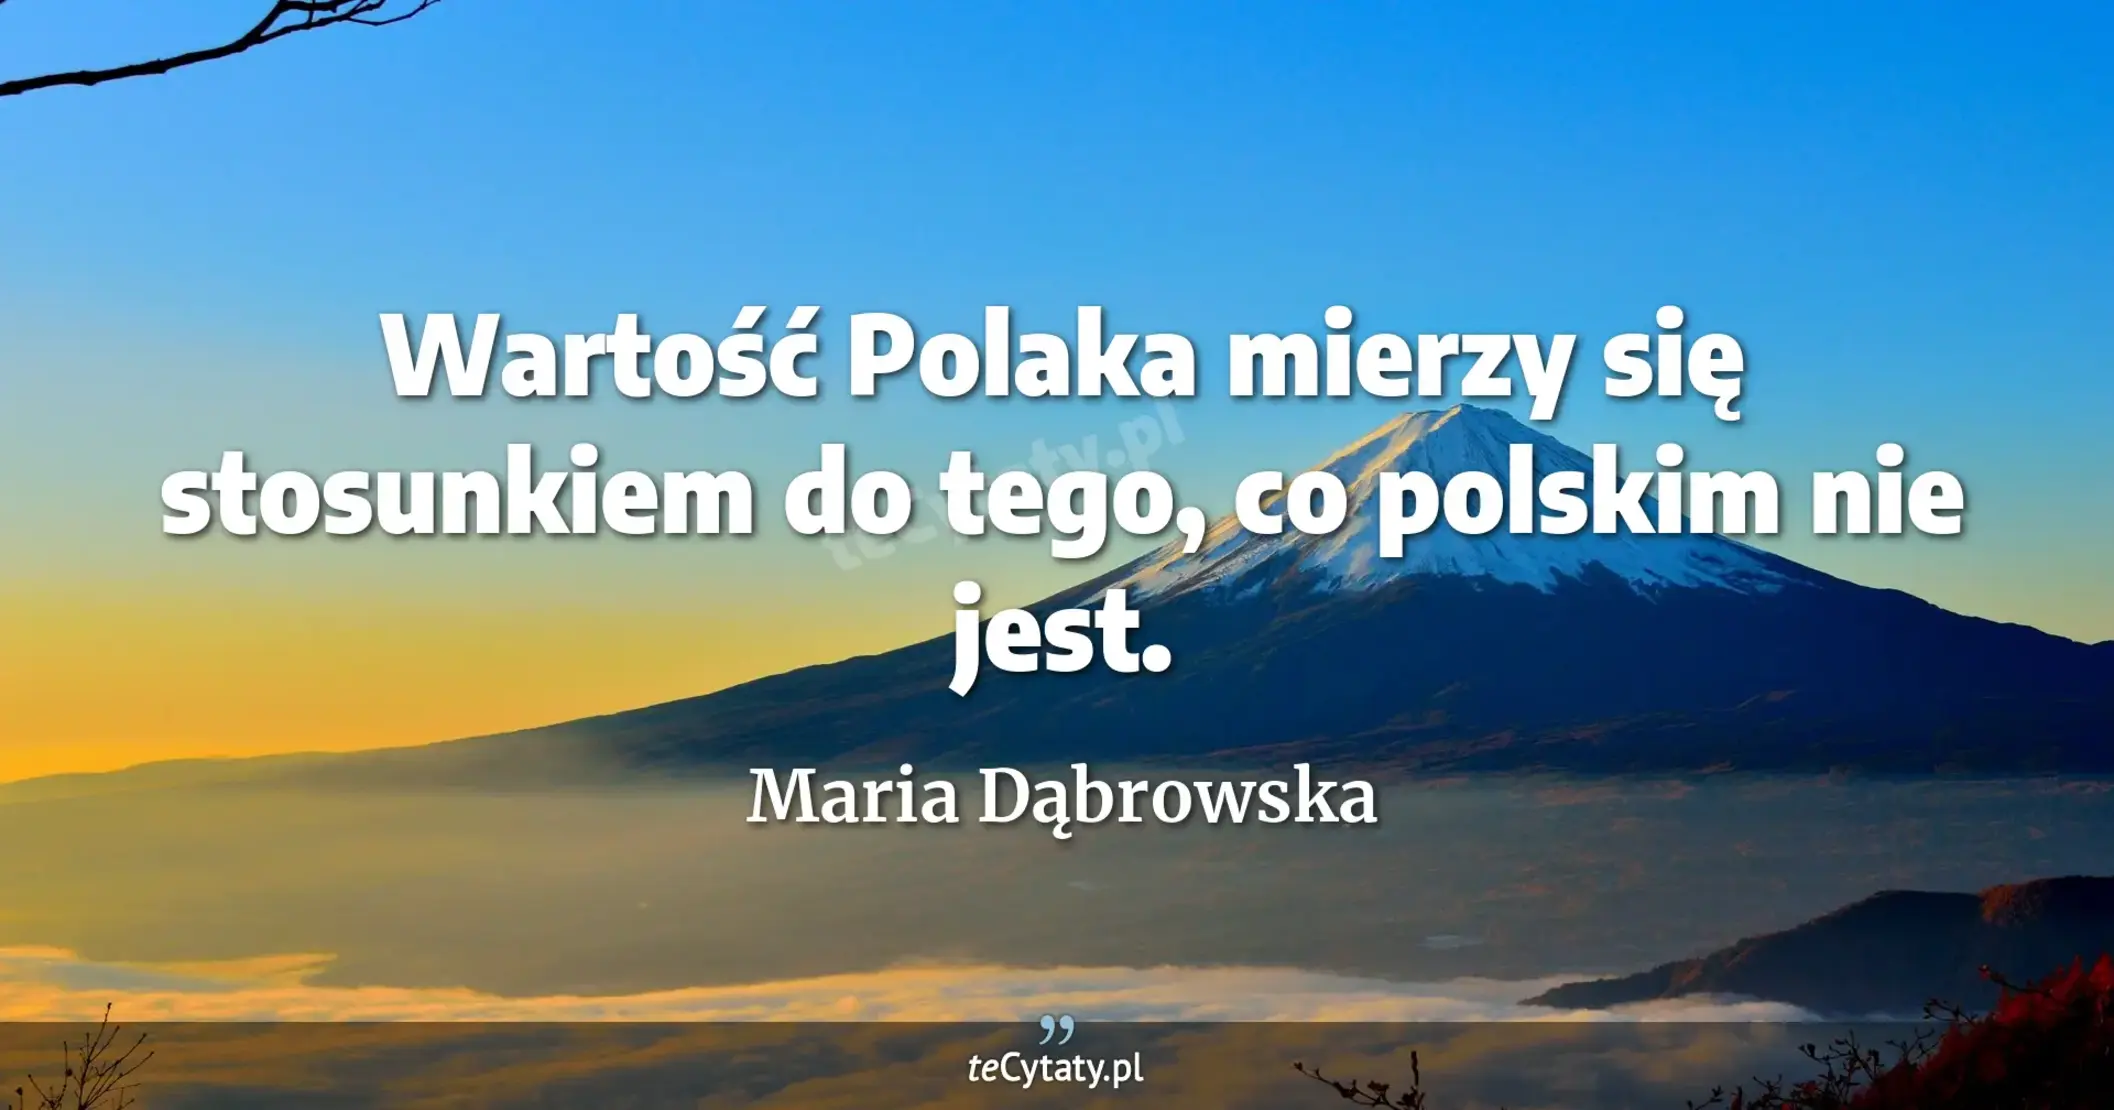 Wartość Polaka mierzy się stosunkiem do tego, co polskim nie jest. - Maria Dąbrowska